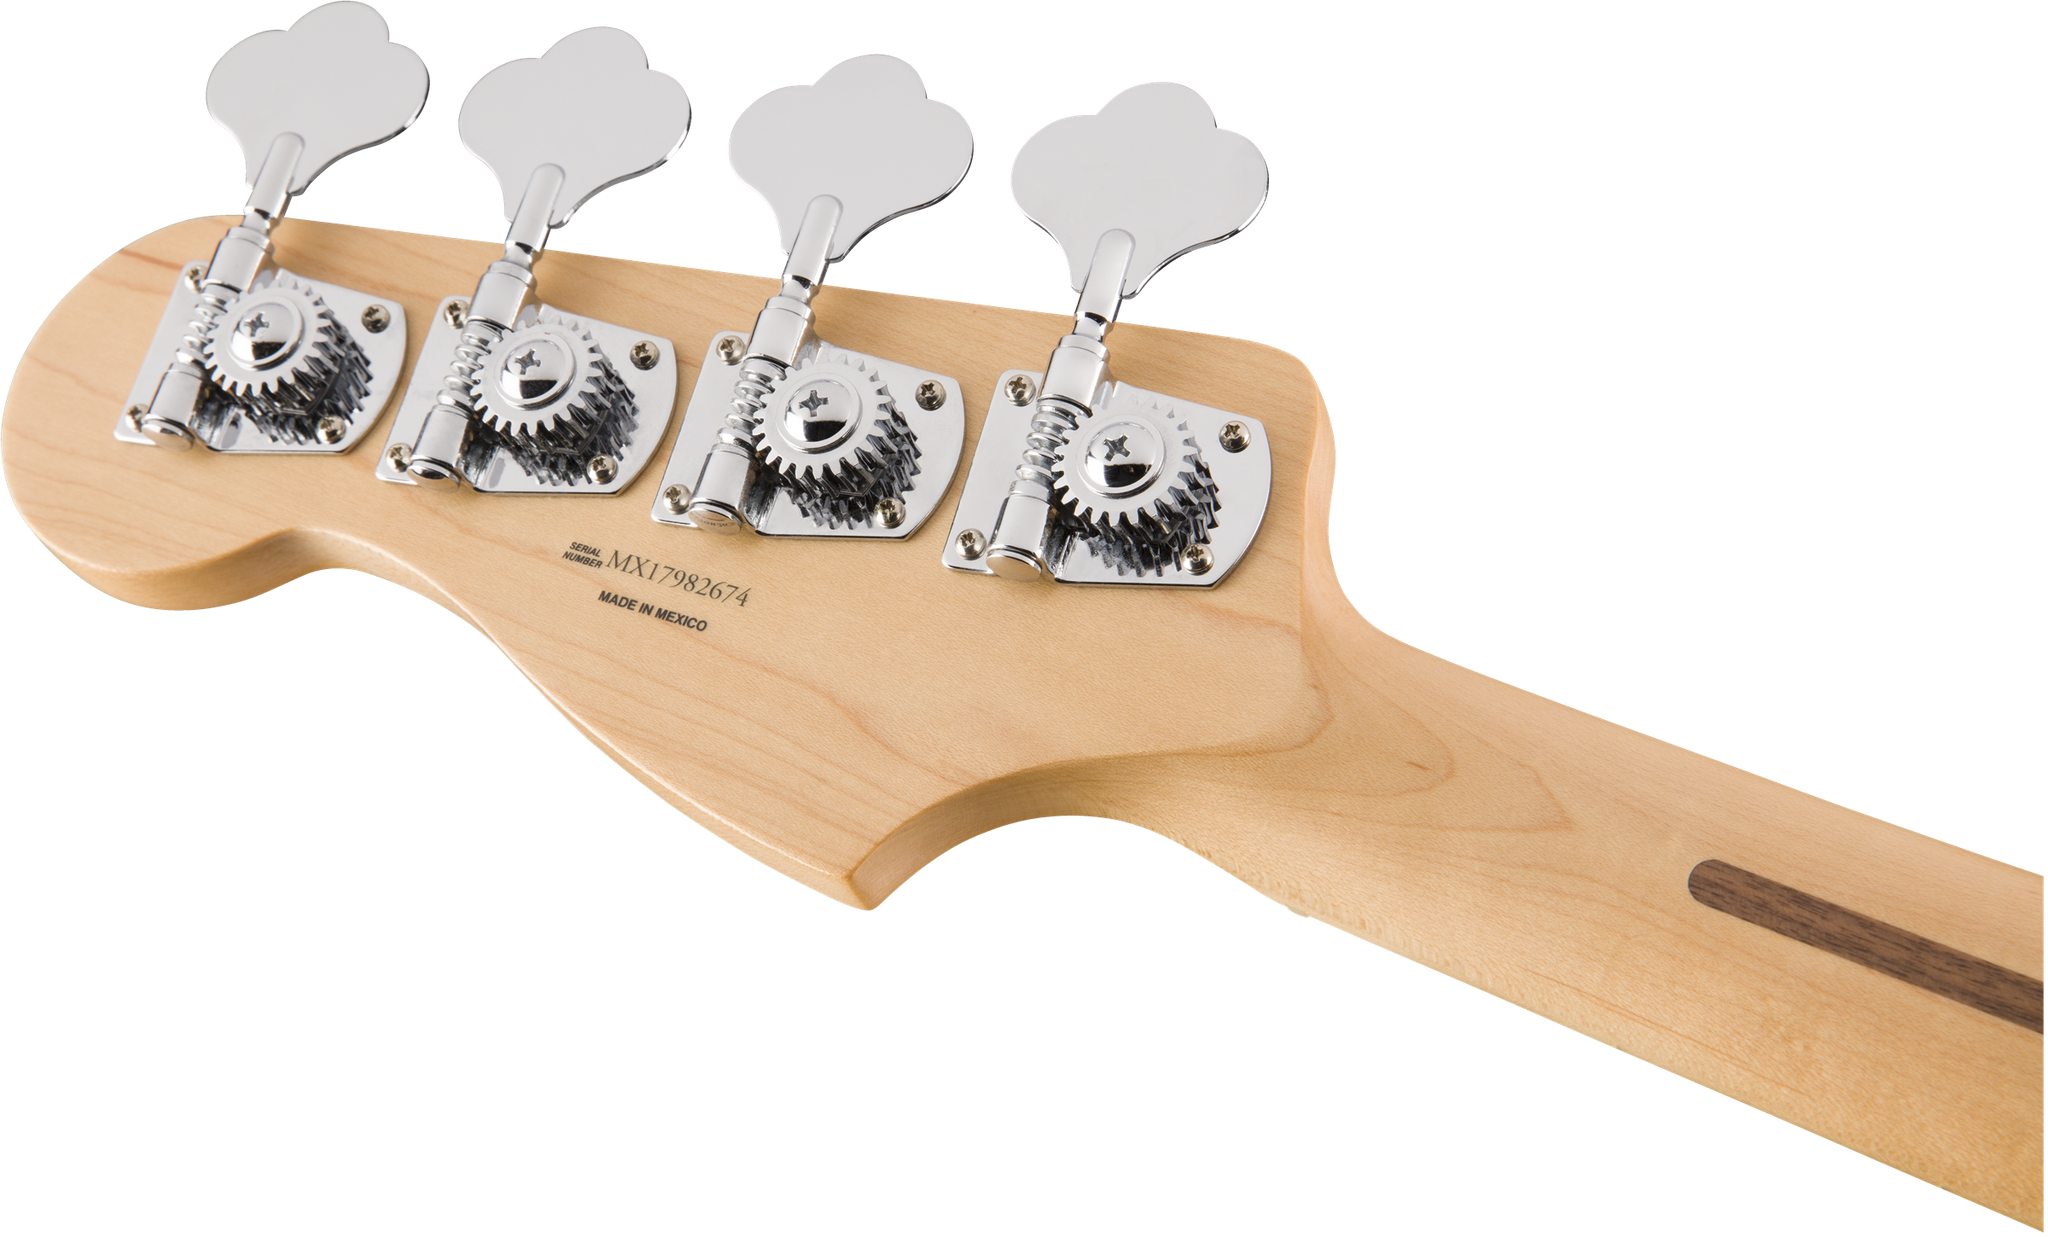 Fender Player Precision Bass Buttercream